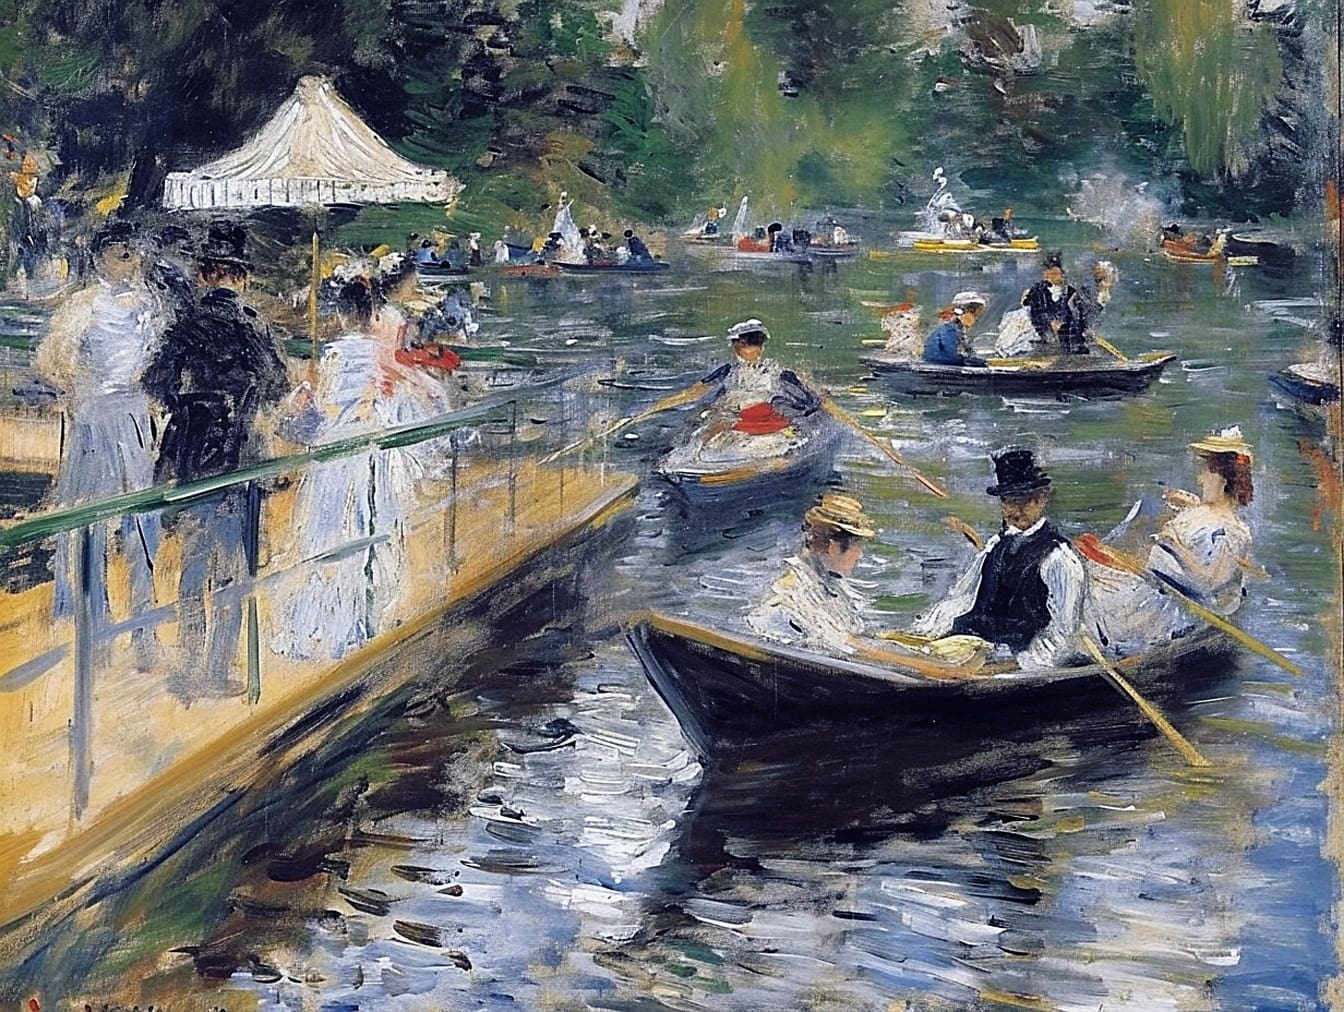 Het schilderen van mensen in boten op kanaal